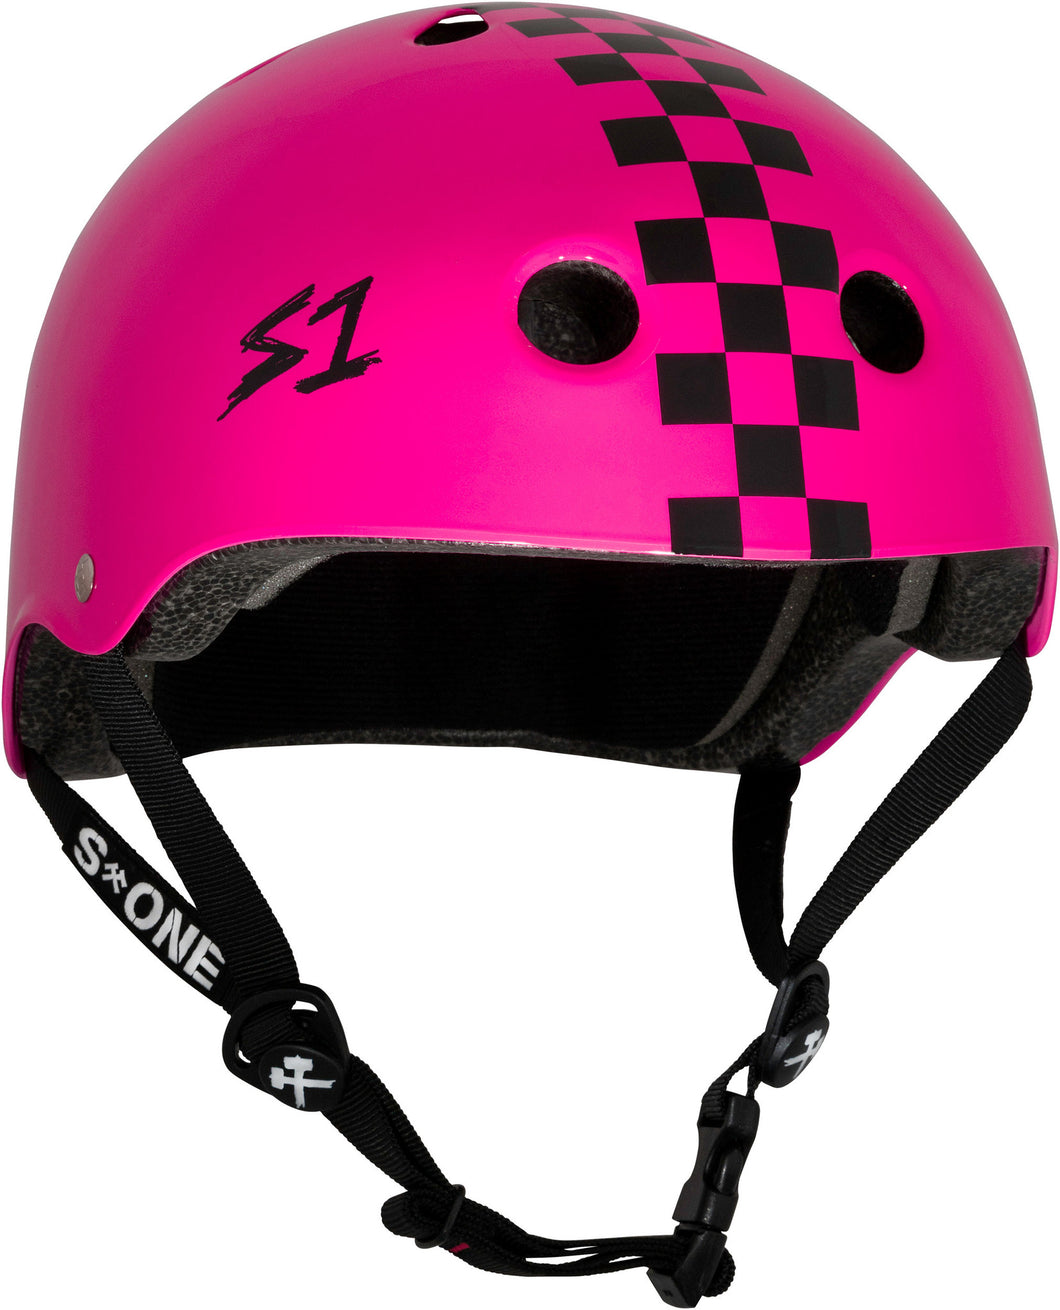 S1 S One Lifer Helmet